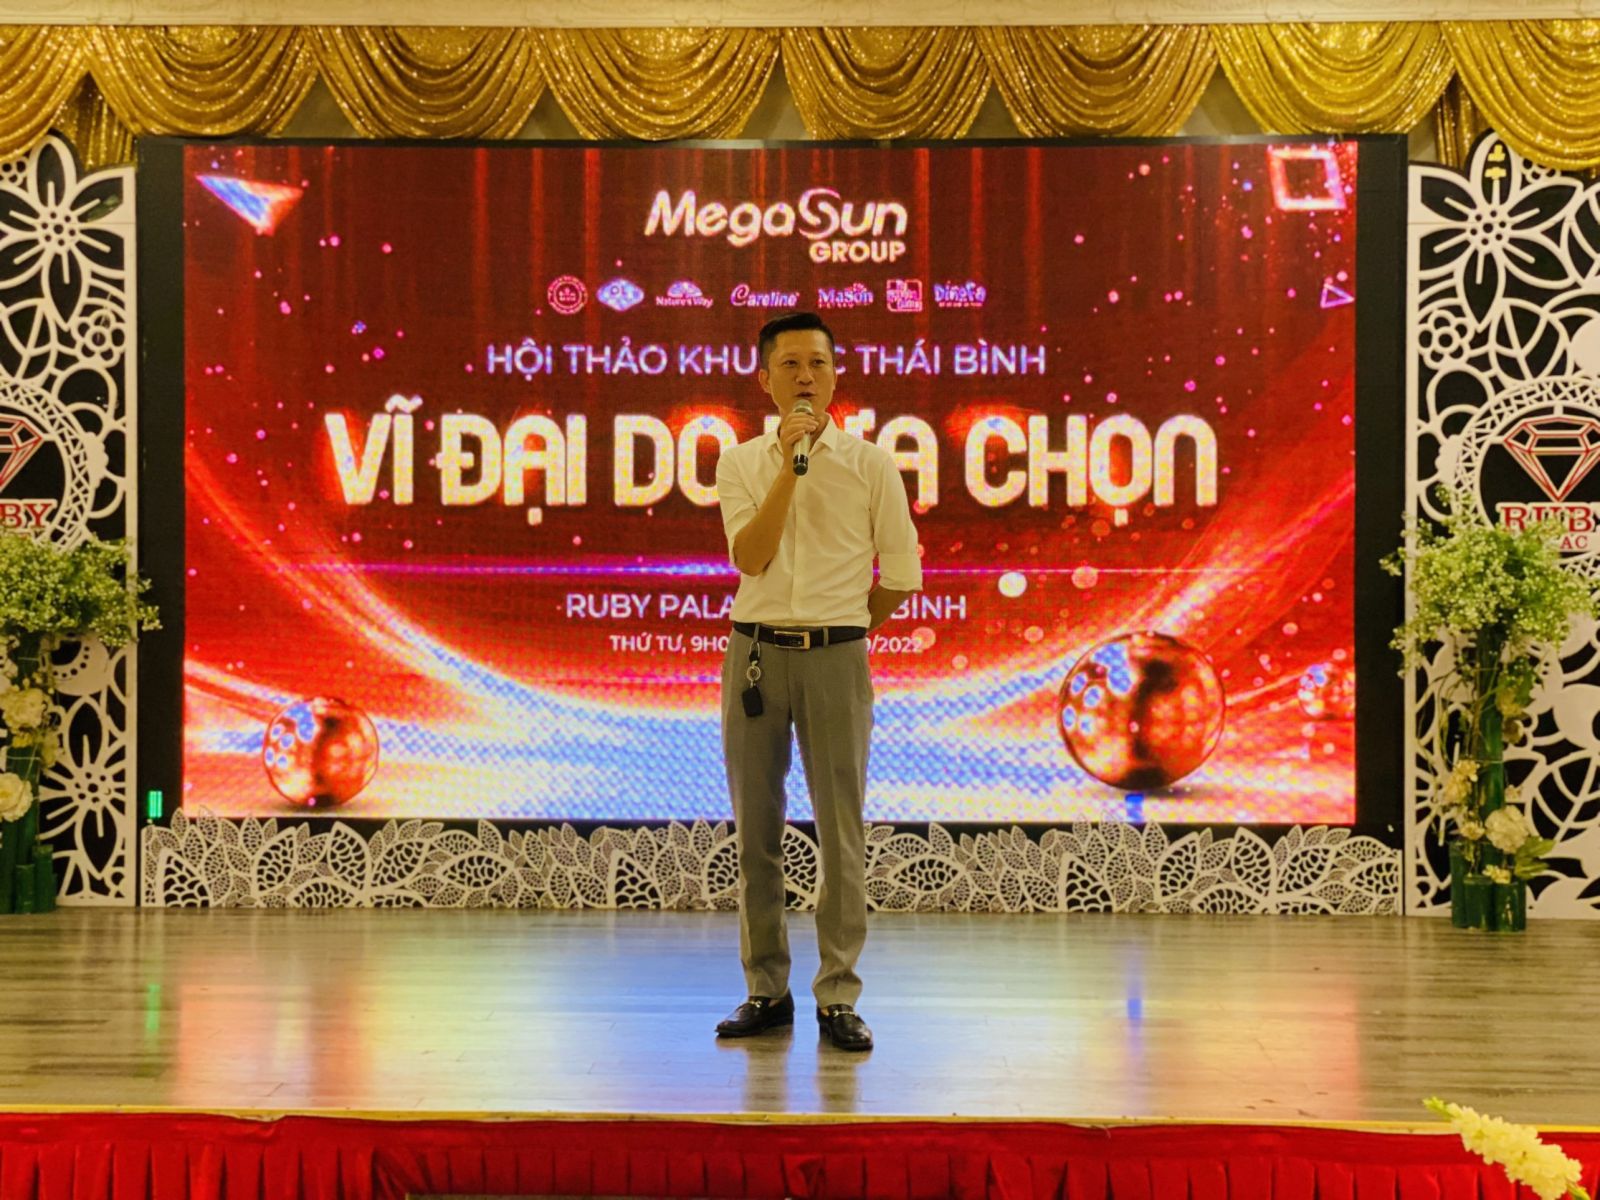 Careline Việt Nam tham dự hội thảo khu vực Thái Bình